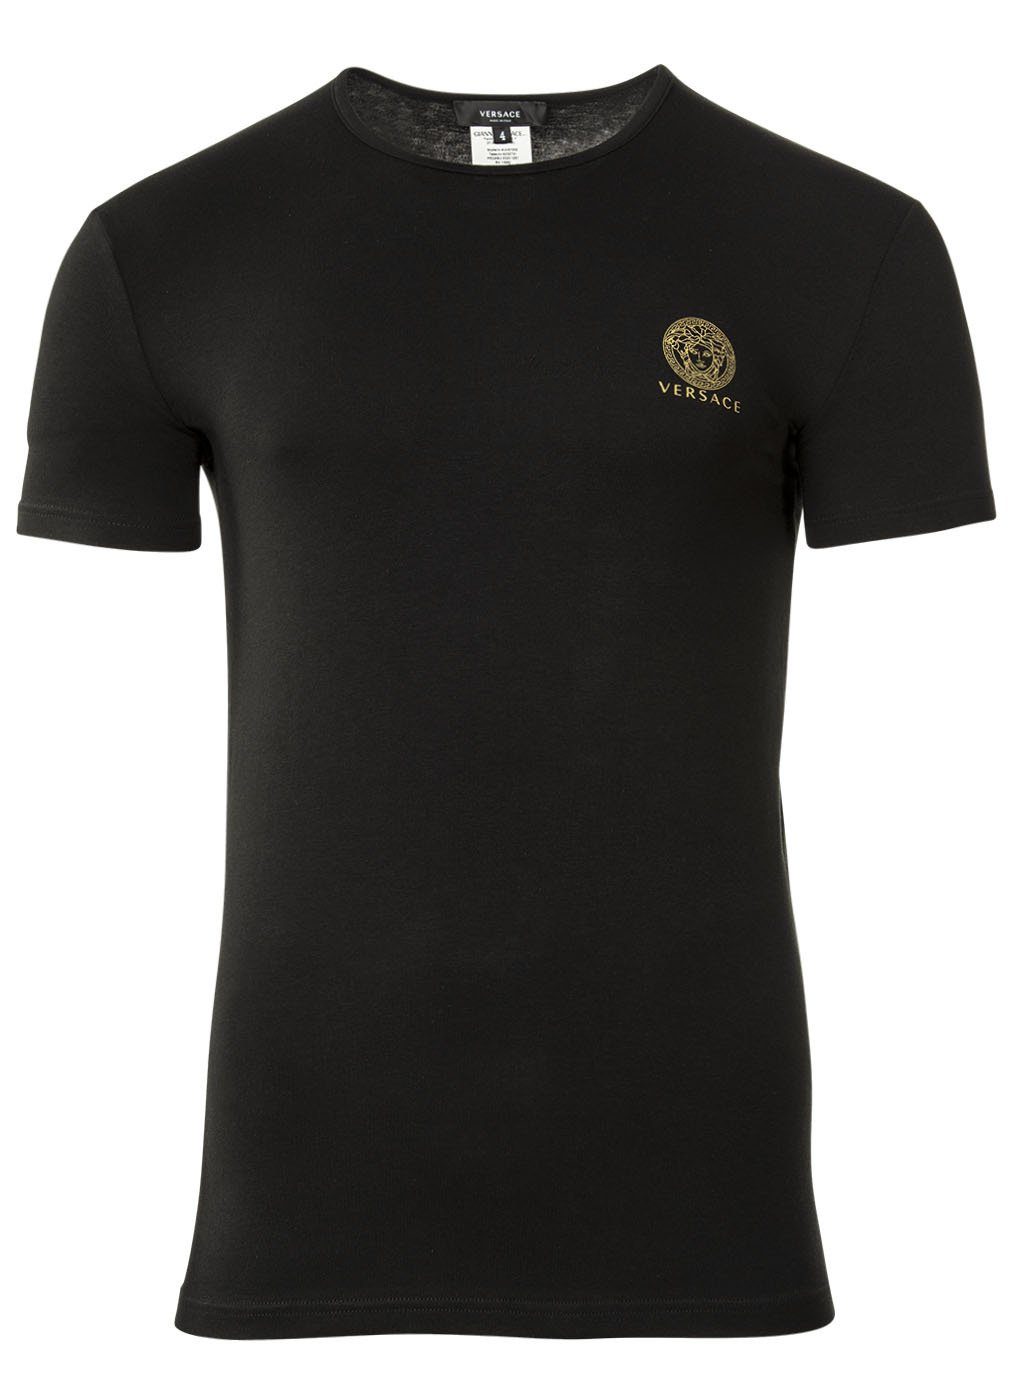 Versace T-Shirt, Unterhemd, Pack Herren T-Shirt 2er Weiß/Schwarz Rundhals -